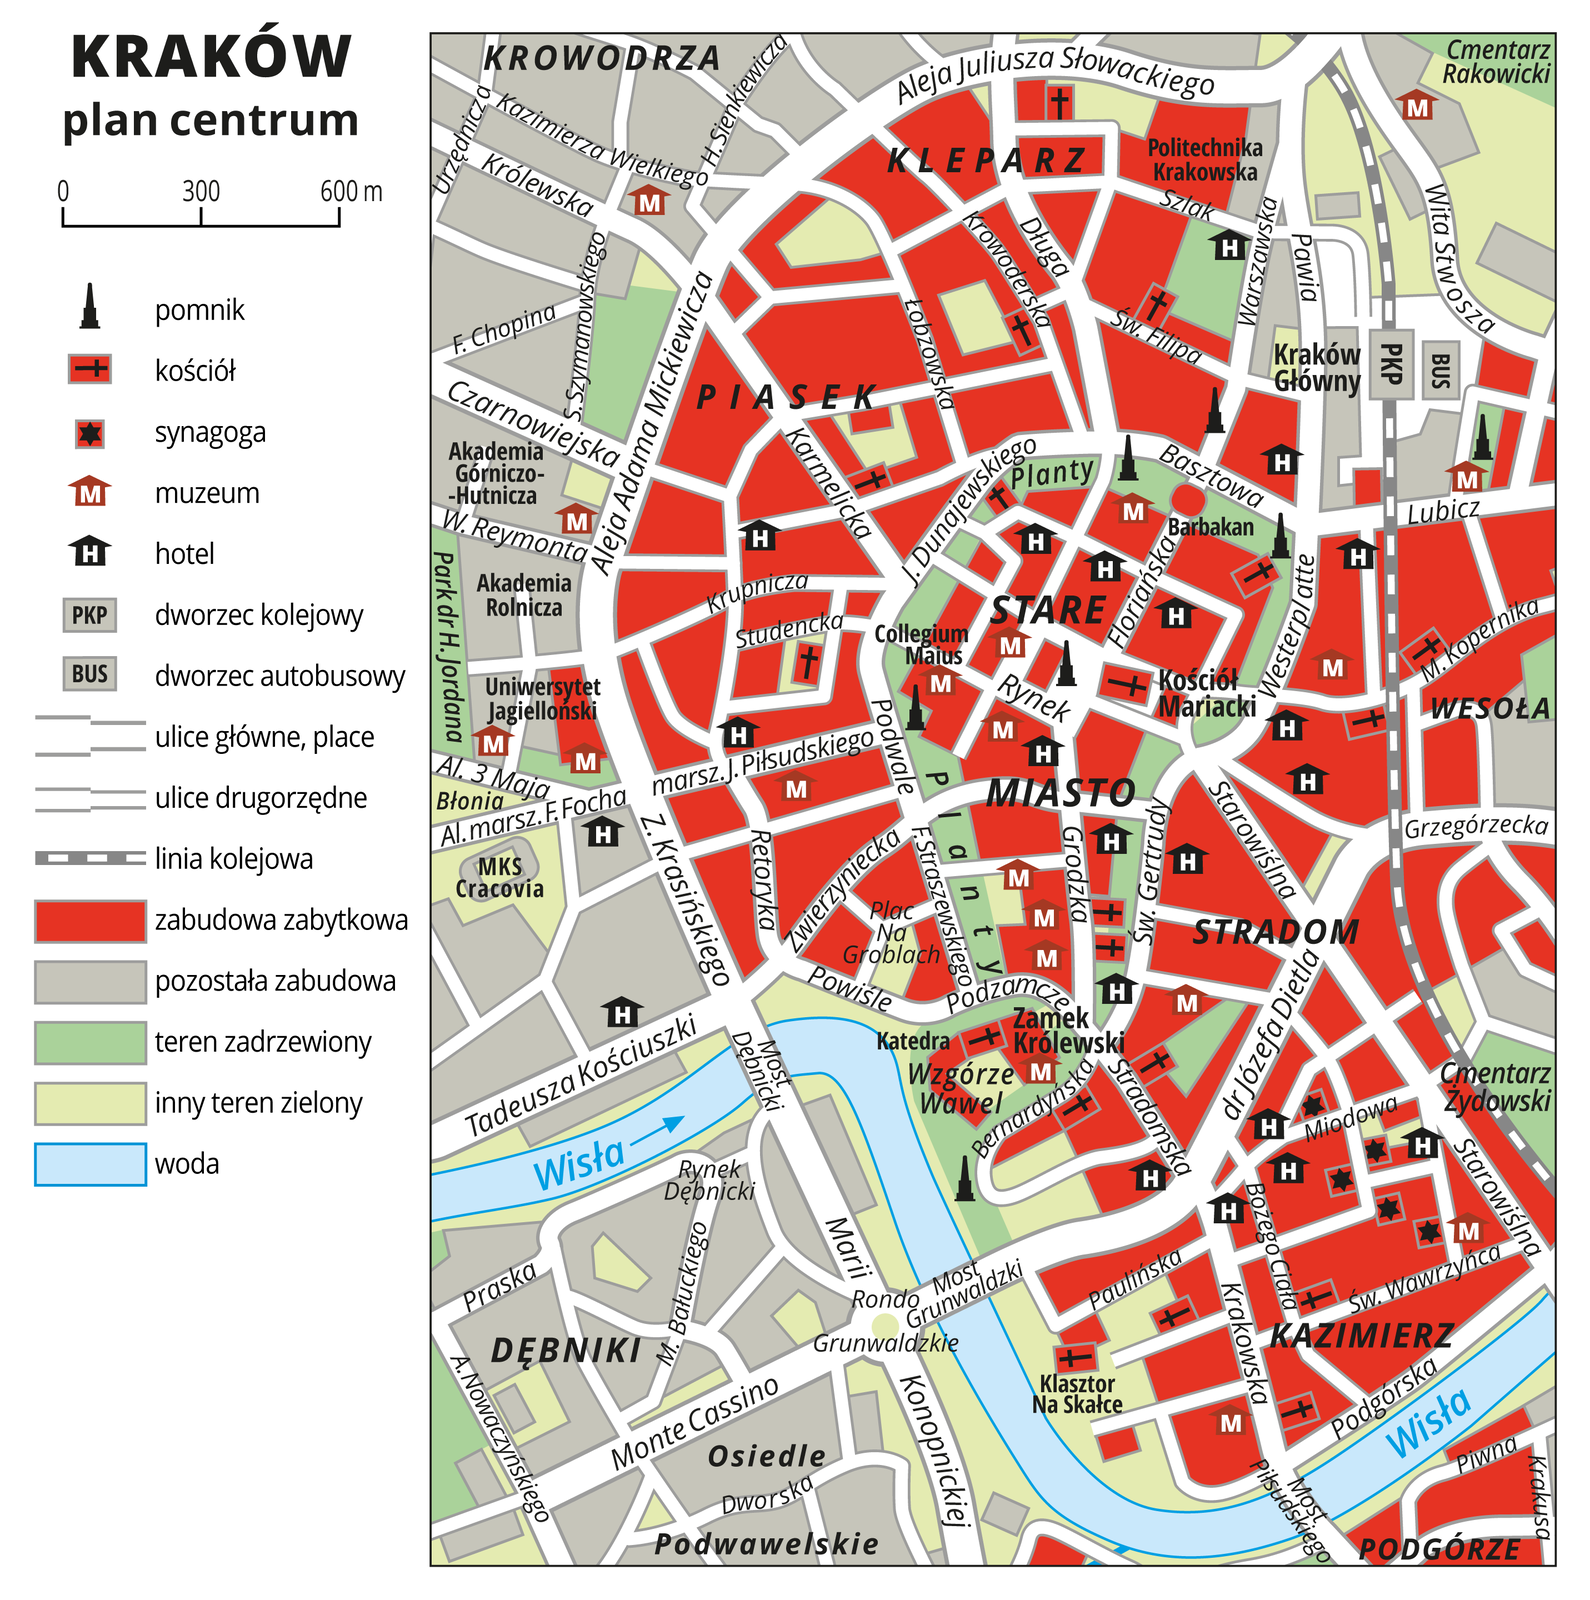 Ilustracja przedstawia plan centrum Krakowa. Kolorem czerwonym przedstawiono zabudowę zabytkową, przeważa ona na mapie. Za pomocą sygnatur przedstawiono pomniki, kościoły, synagogi, muzea, hotele, dworzec kolejowy i dworzec autobusowy. Na planie uwzględniono tereny zielone i zadrzewione. Na dole planu widoczna jest Wisła.